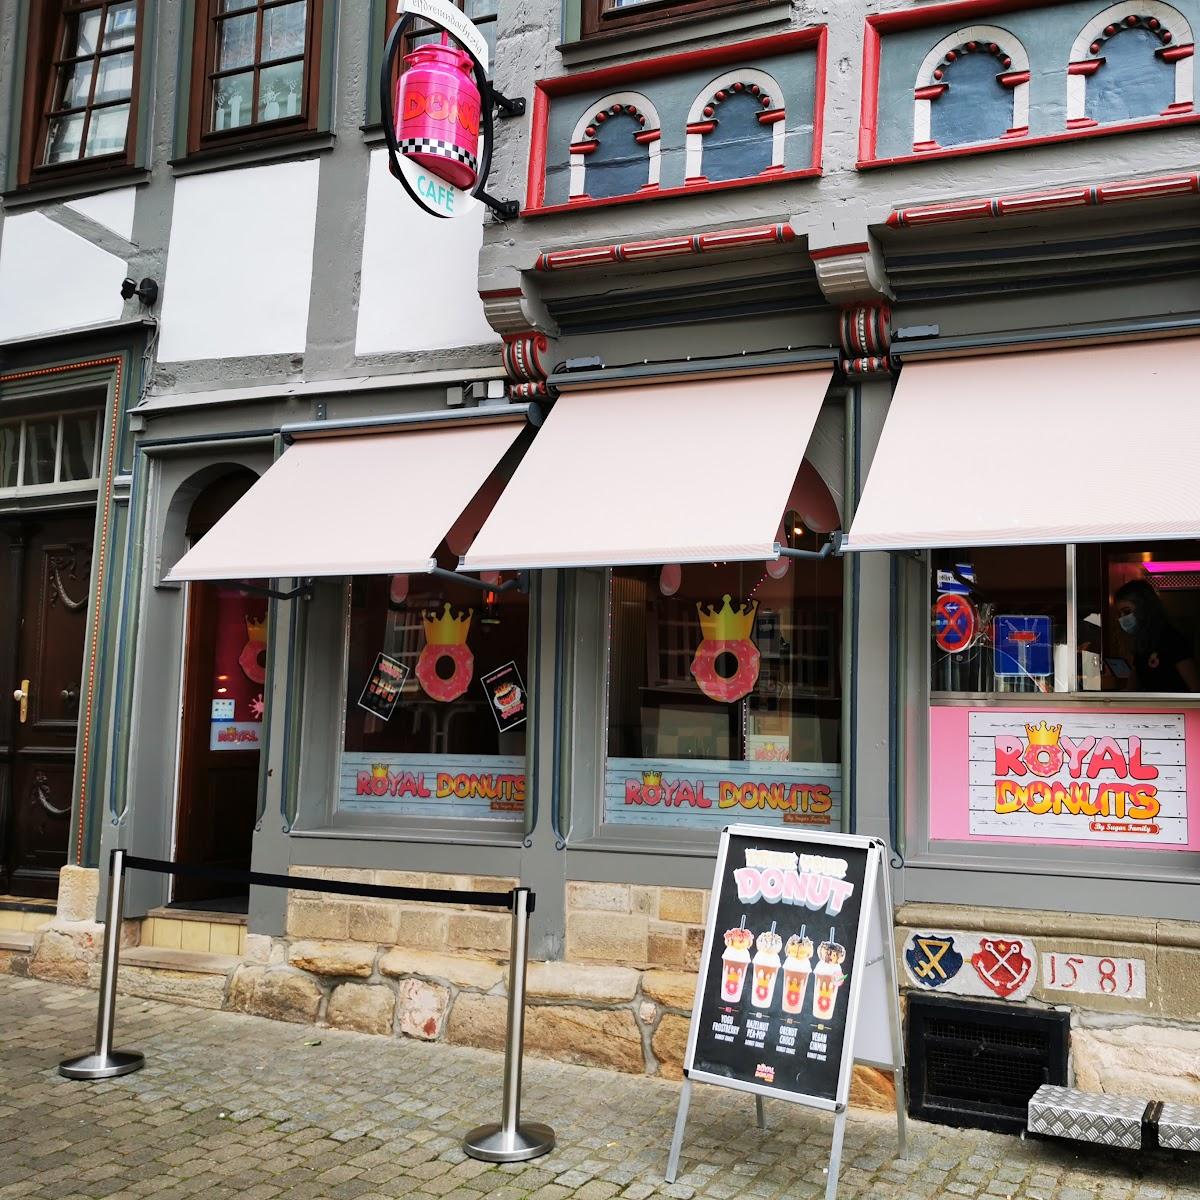 Restaurant "Royal Donuts" in Hann. Münden